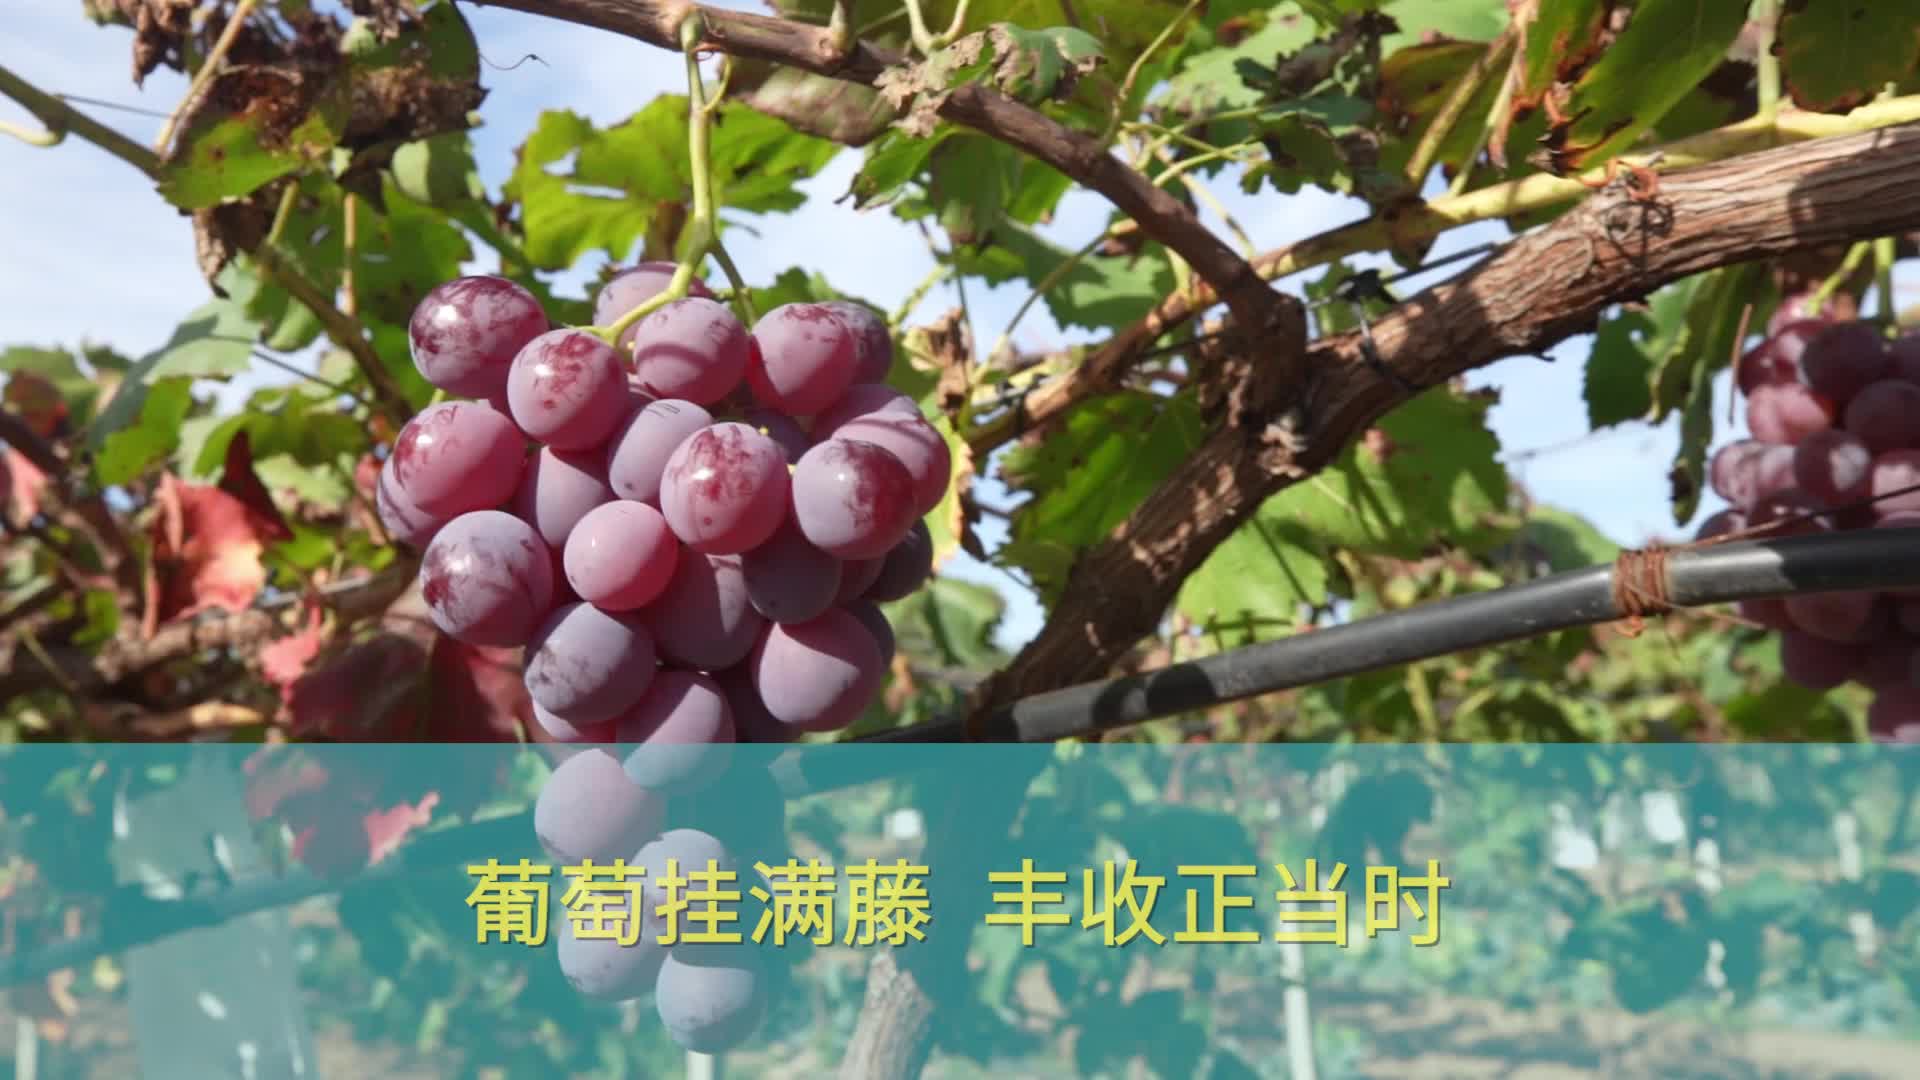 【庆阳视频】葡萄挂满藤 丰收正当时